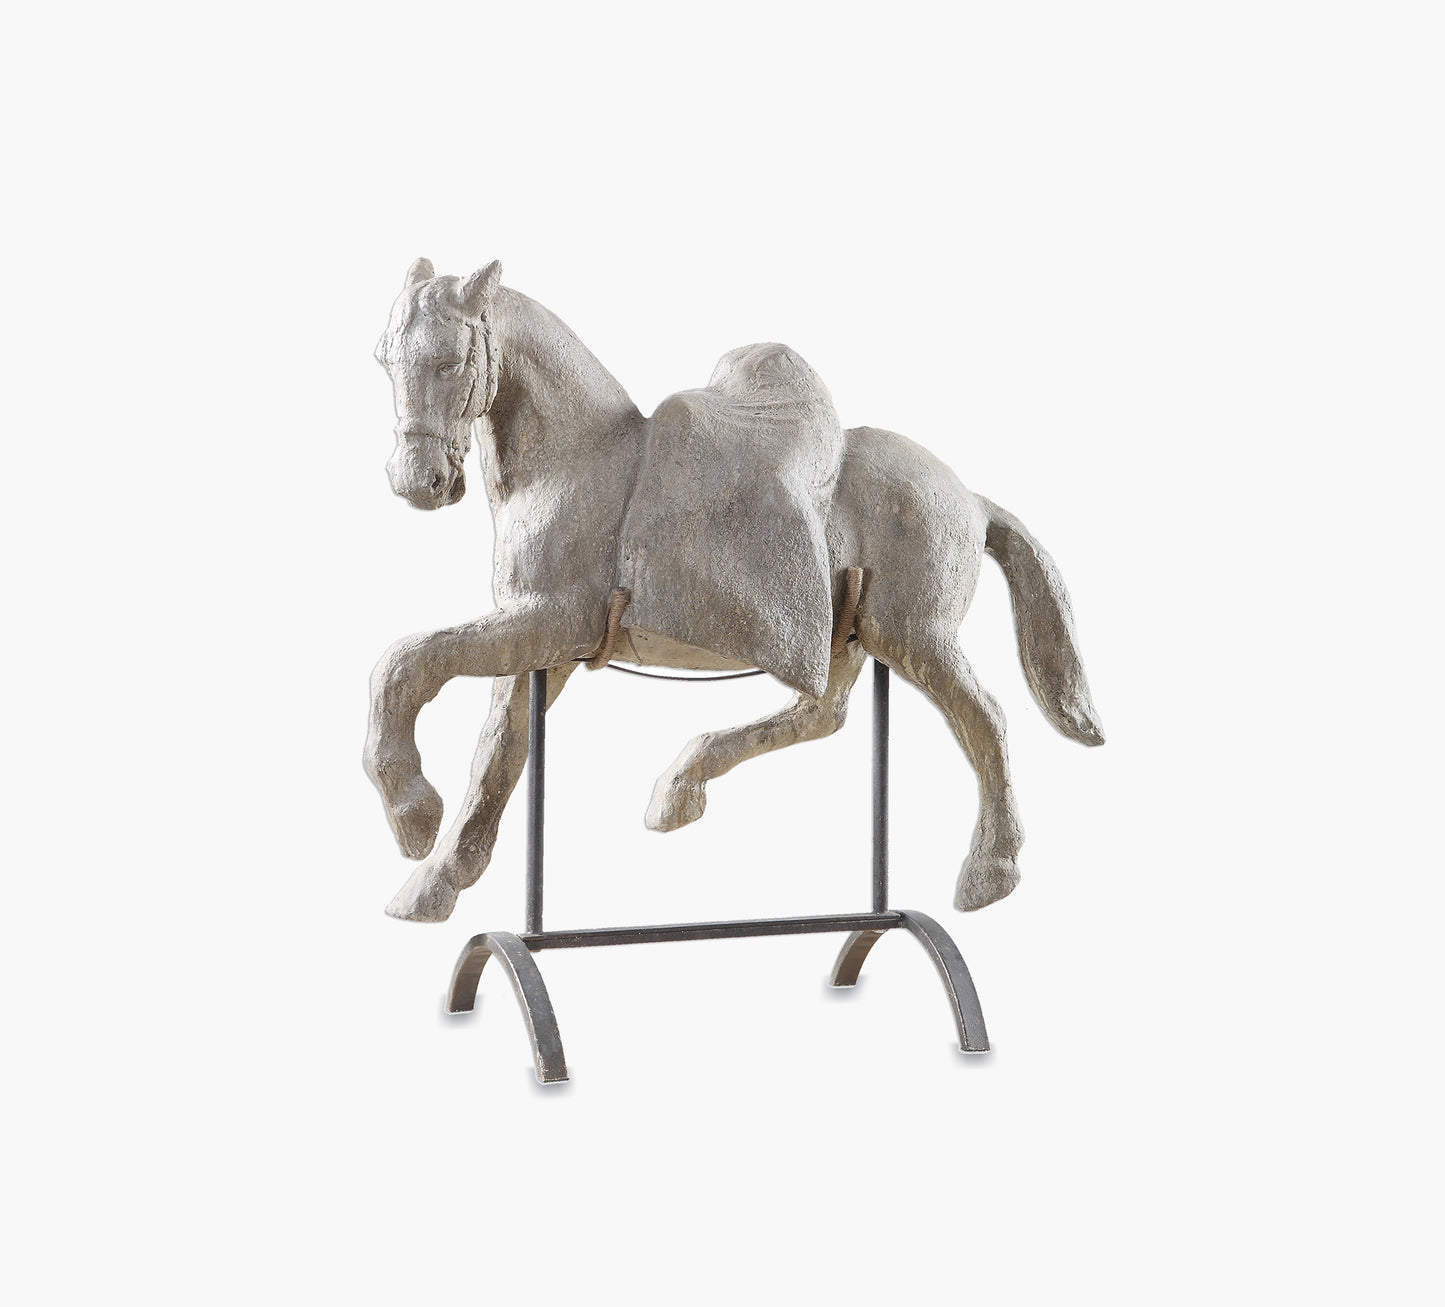 Lazzaro Horse Sculpture